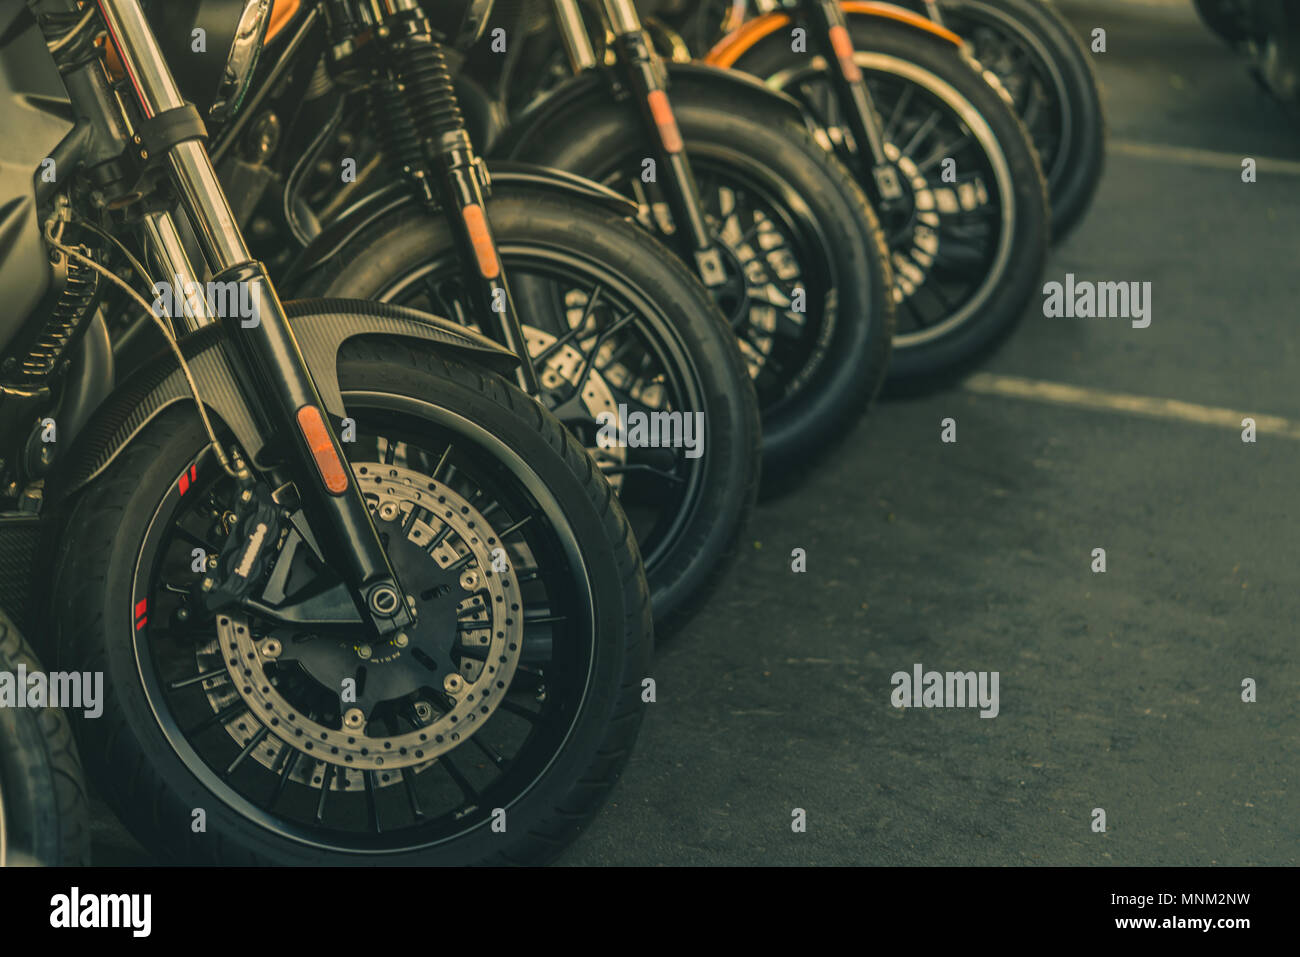 https://c8.alamy.com/compde/mnm2nw/nahaufnahme-des-neuen-motorrad-vorderrad-big-bike-auf-dem-asphalt-der-strasse-geparkt-iconic-motorrad-mit-sportlichem-design-schwarze-reifen-mit-einzigartigen-muster-und-sprachen-mnm2nw.jpg